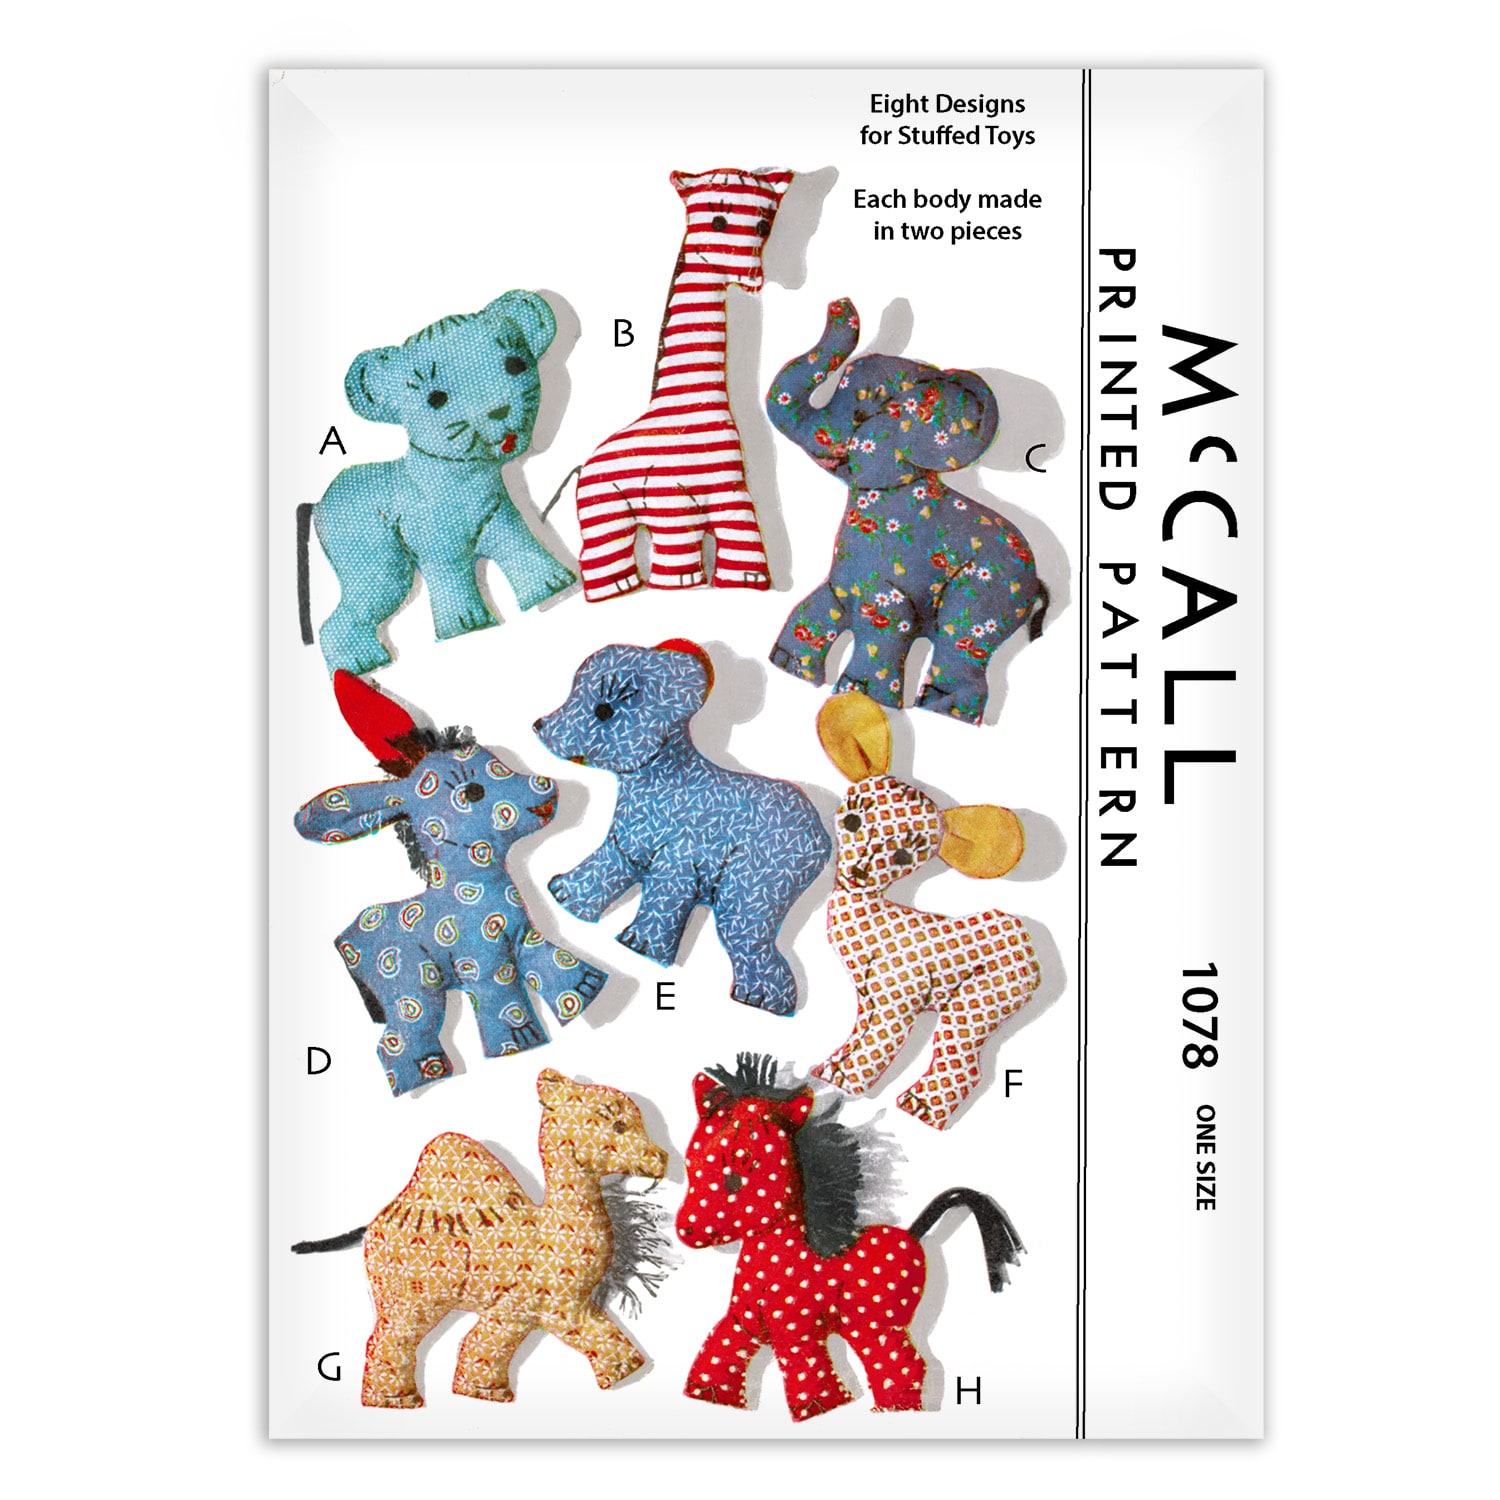 McCall's #1078 Fabric Sewing Pattern 8 Stuffed Animals Giraffe Donkey Camel Faun